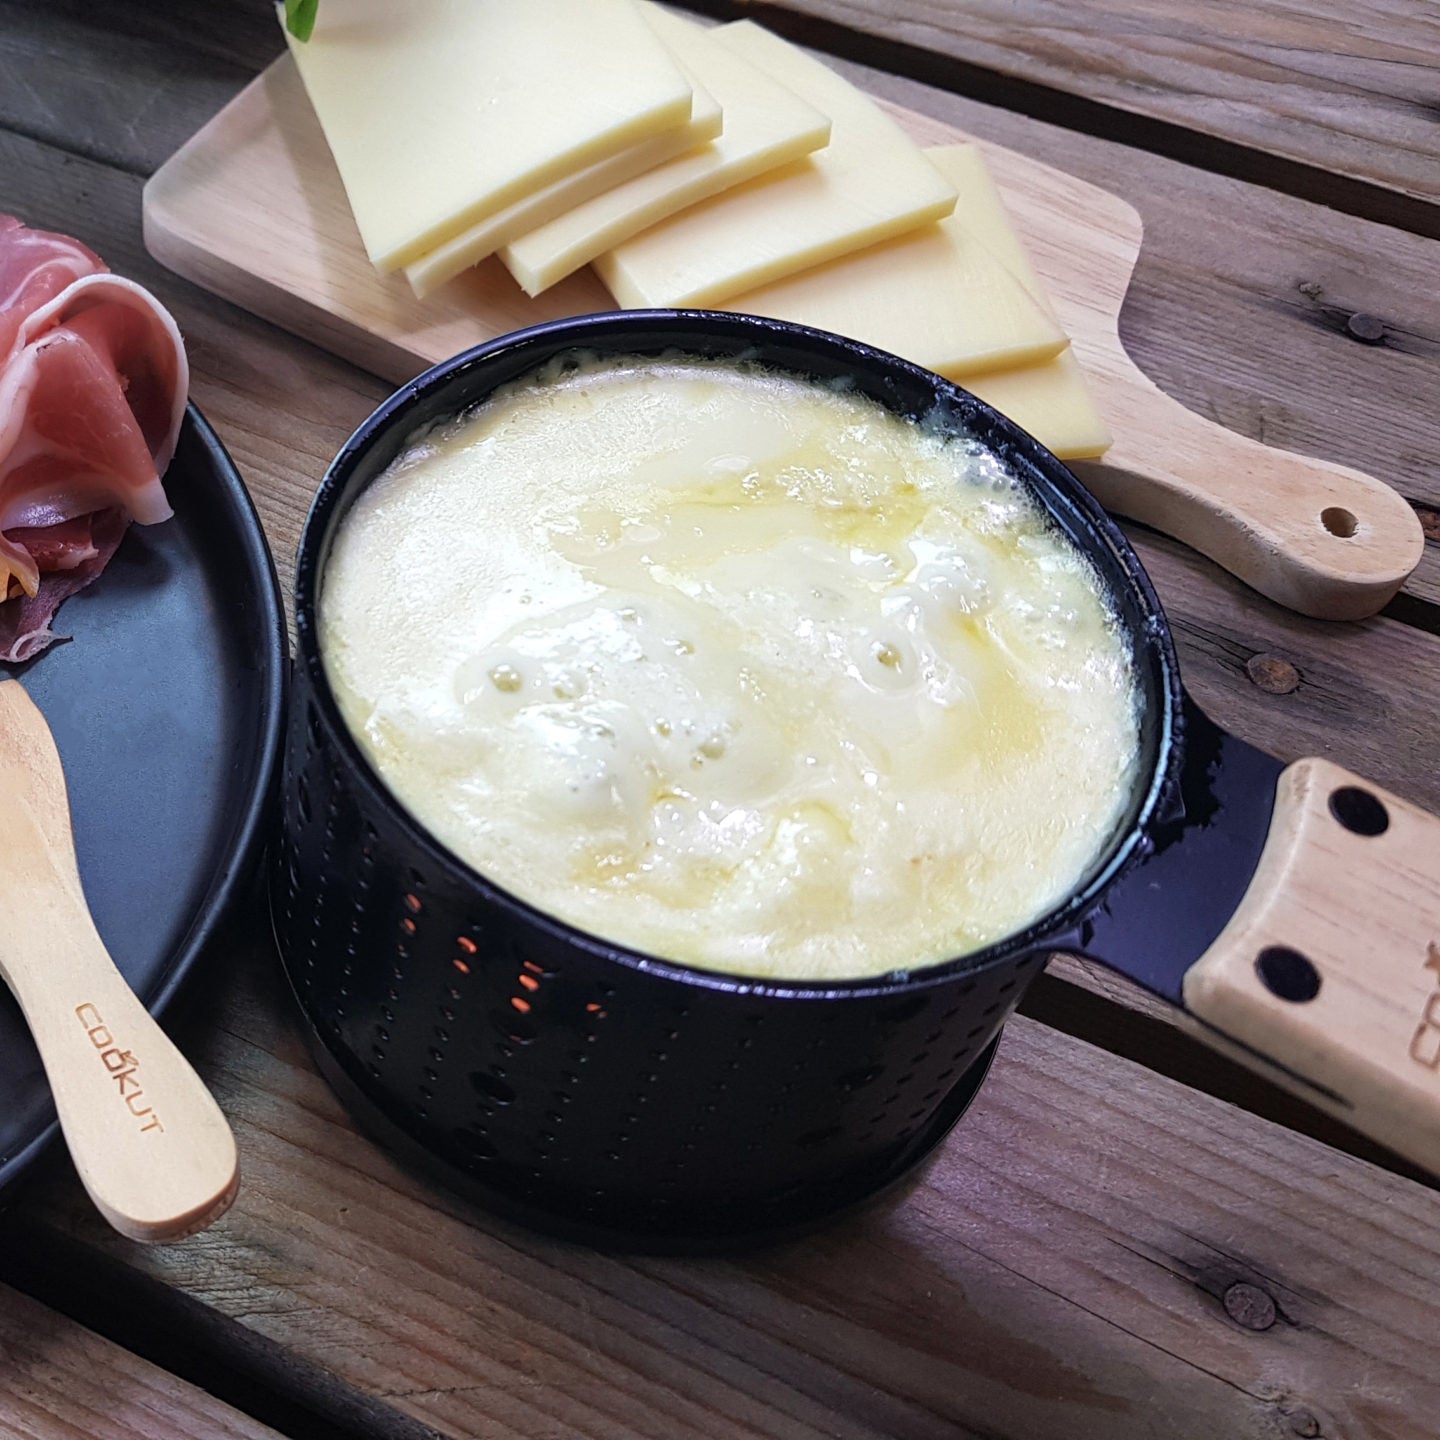 Raclette et fondue à la bougie / Le coffret cadeau Lumi / 3 en 1